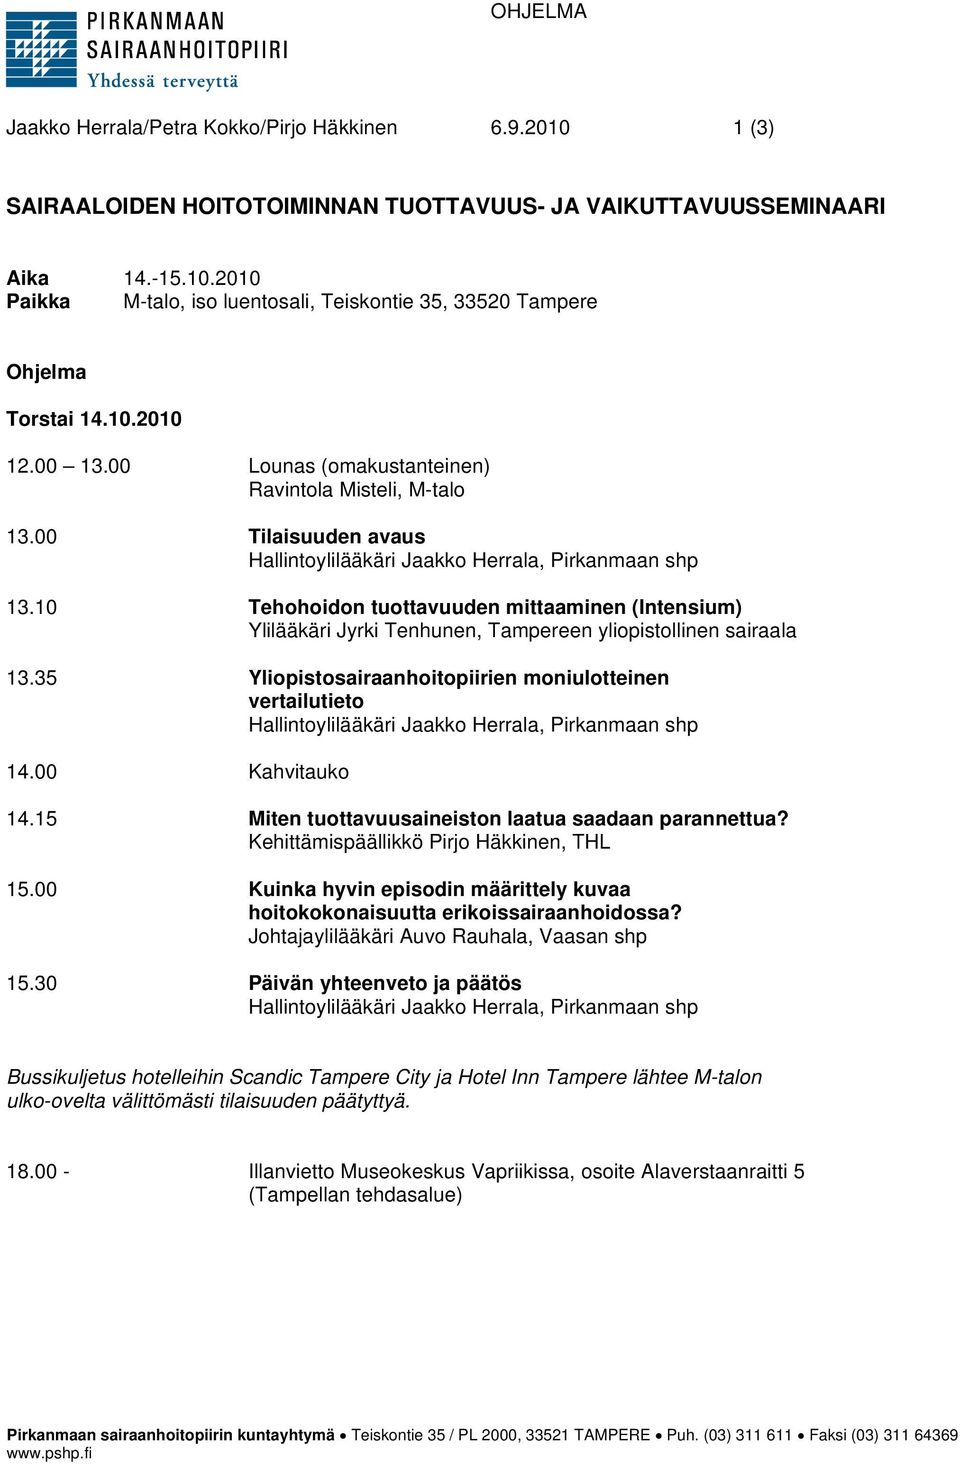 10 Tehohoidon tuottavuuden mittaaminen (Intensium) Ylilääkäri Jyrki Tenhunen, Tampereen yliopistollinen sairaala 13.35 Yliopistosairaanhoitopiirien moniulotteinen vertailutieto 14.00 Kahvitauko 14.